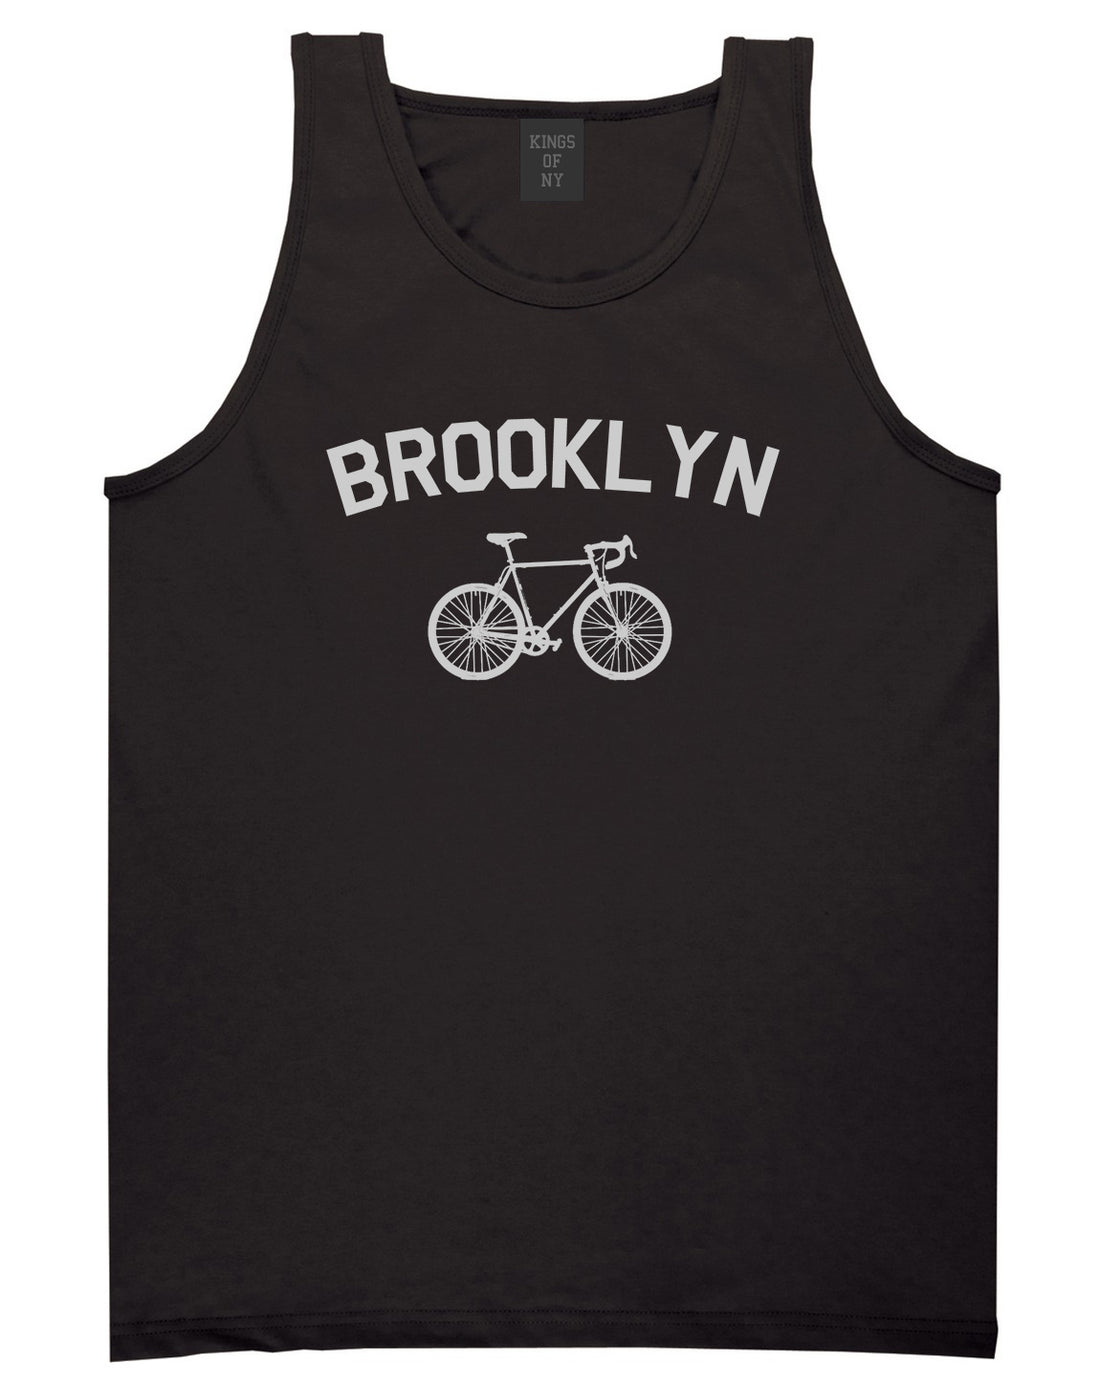 Brooklyn Vintage Bike Cycling Mens Tank Top T-Shirt Black